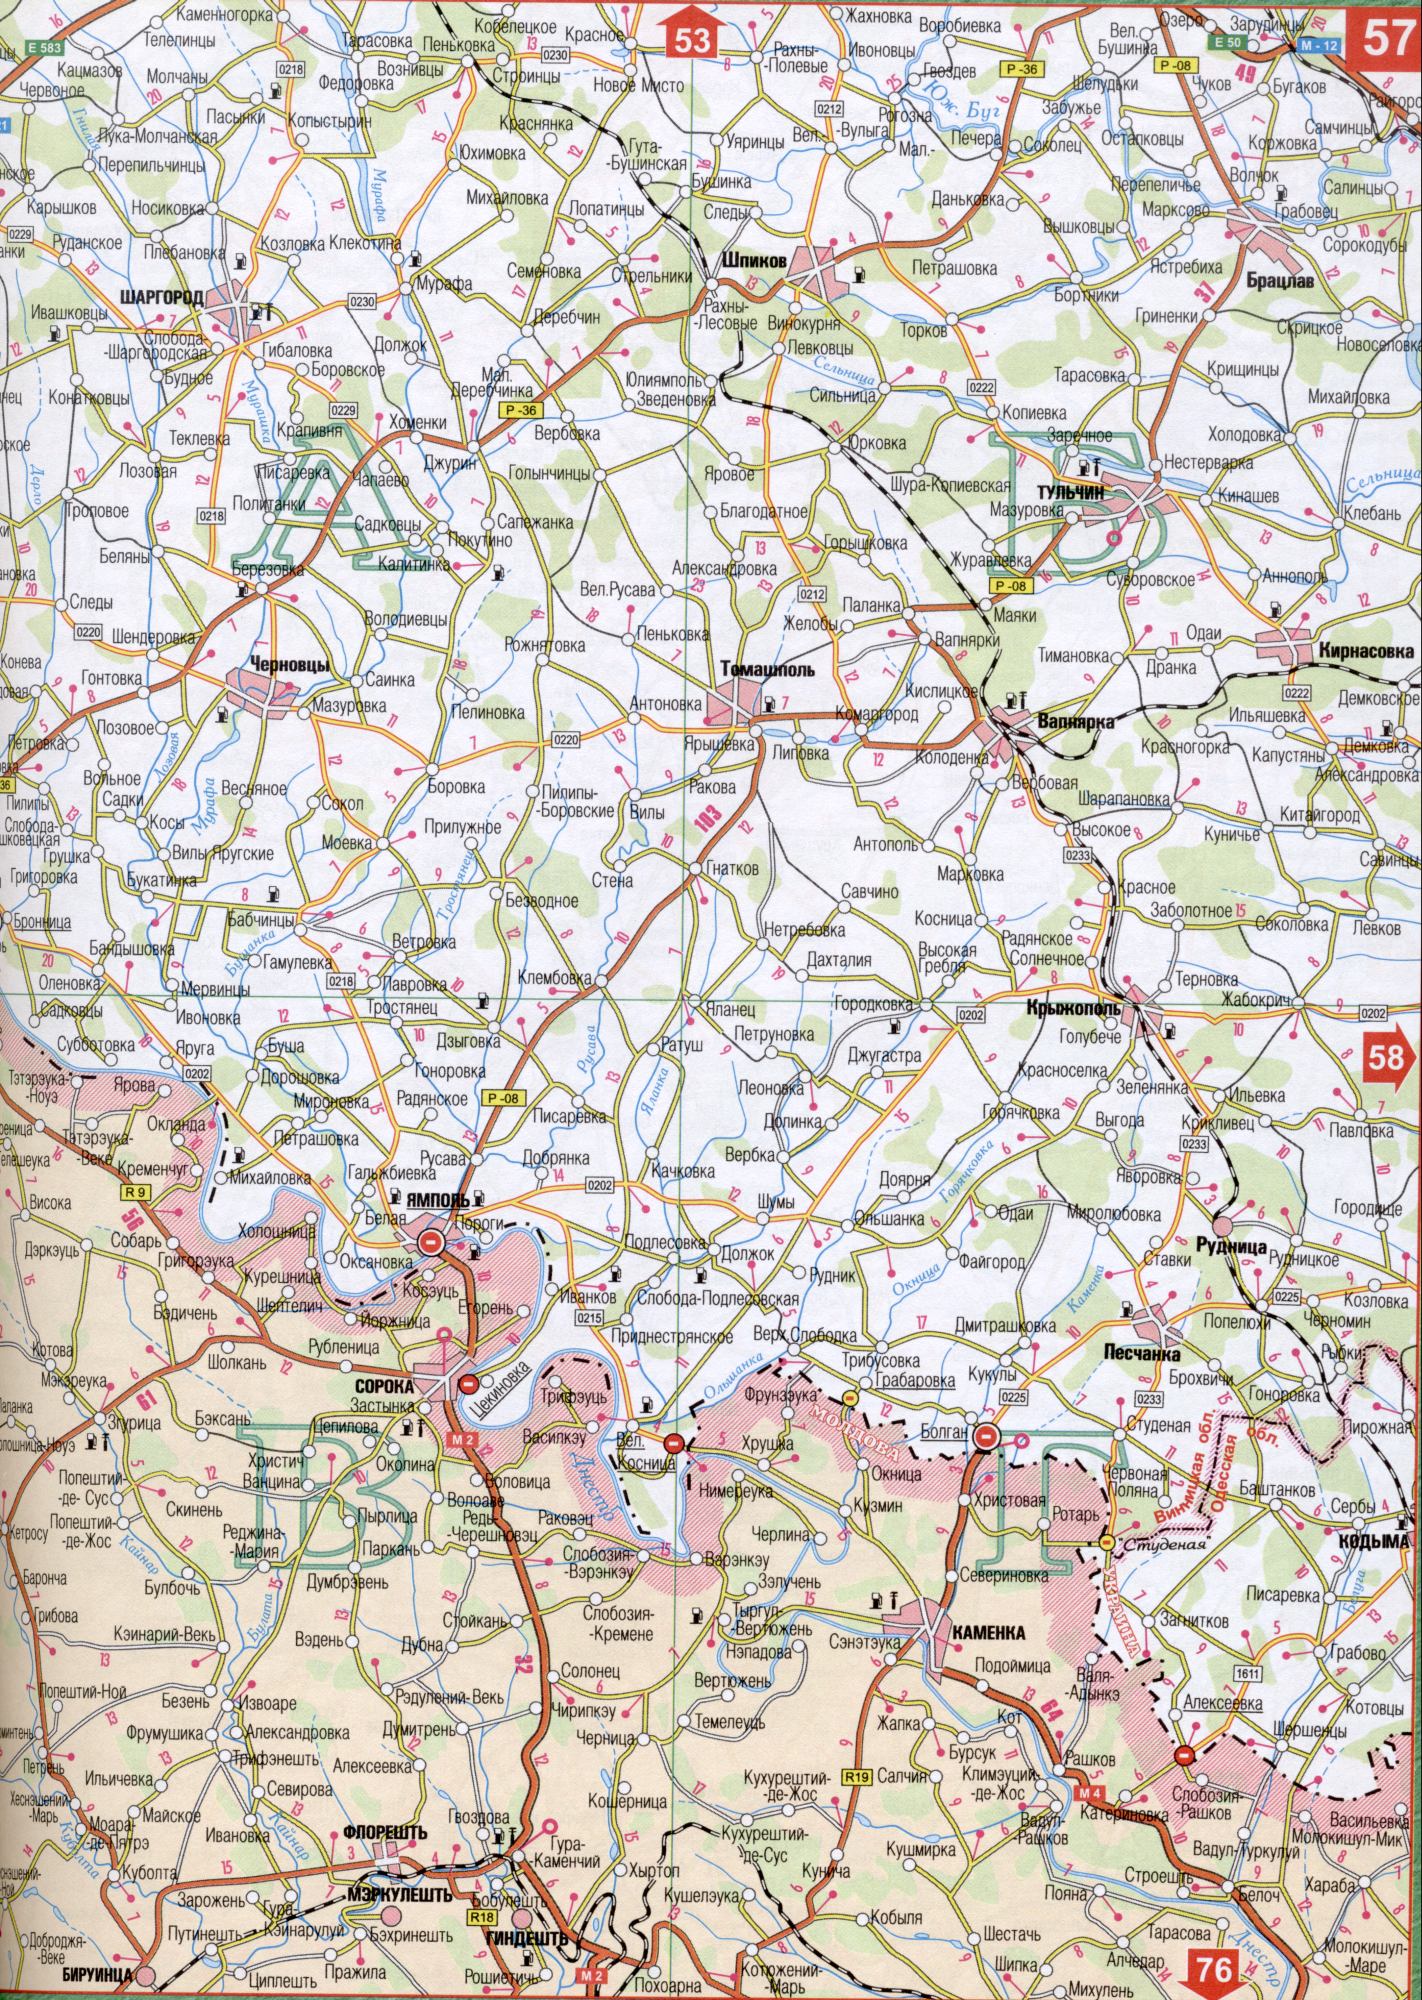 Carte de la région Vinnytsia de l'Ukraine. Une carte détaillée de 1cm échelle: 5000m région Vinnytsia. Charhorod gratuit, Pechora, Sokolec, bacon, bruit, récupération